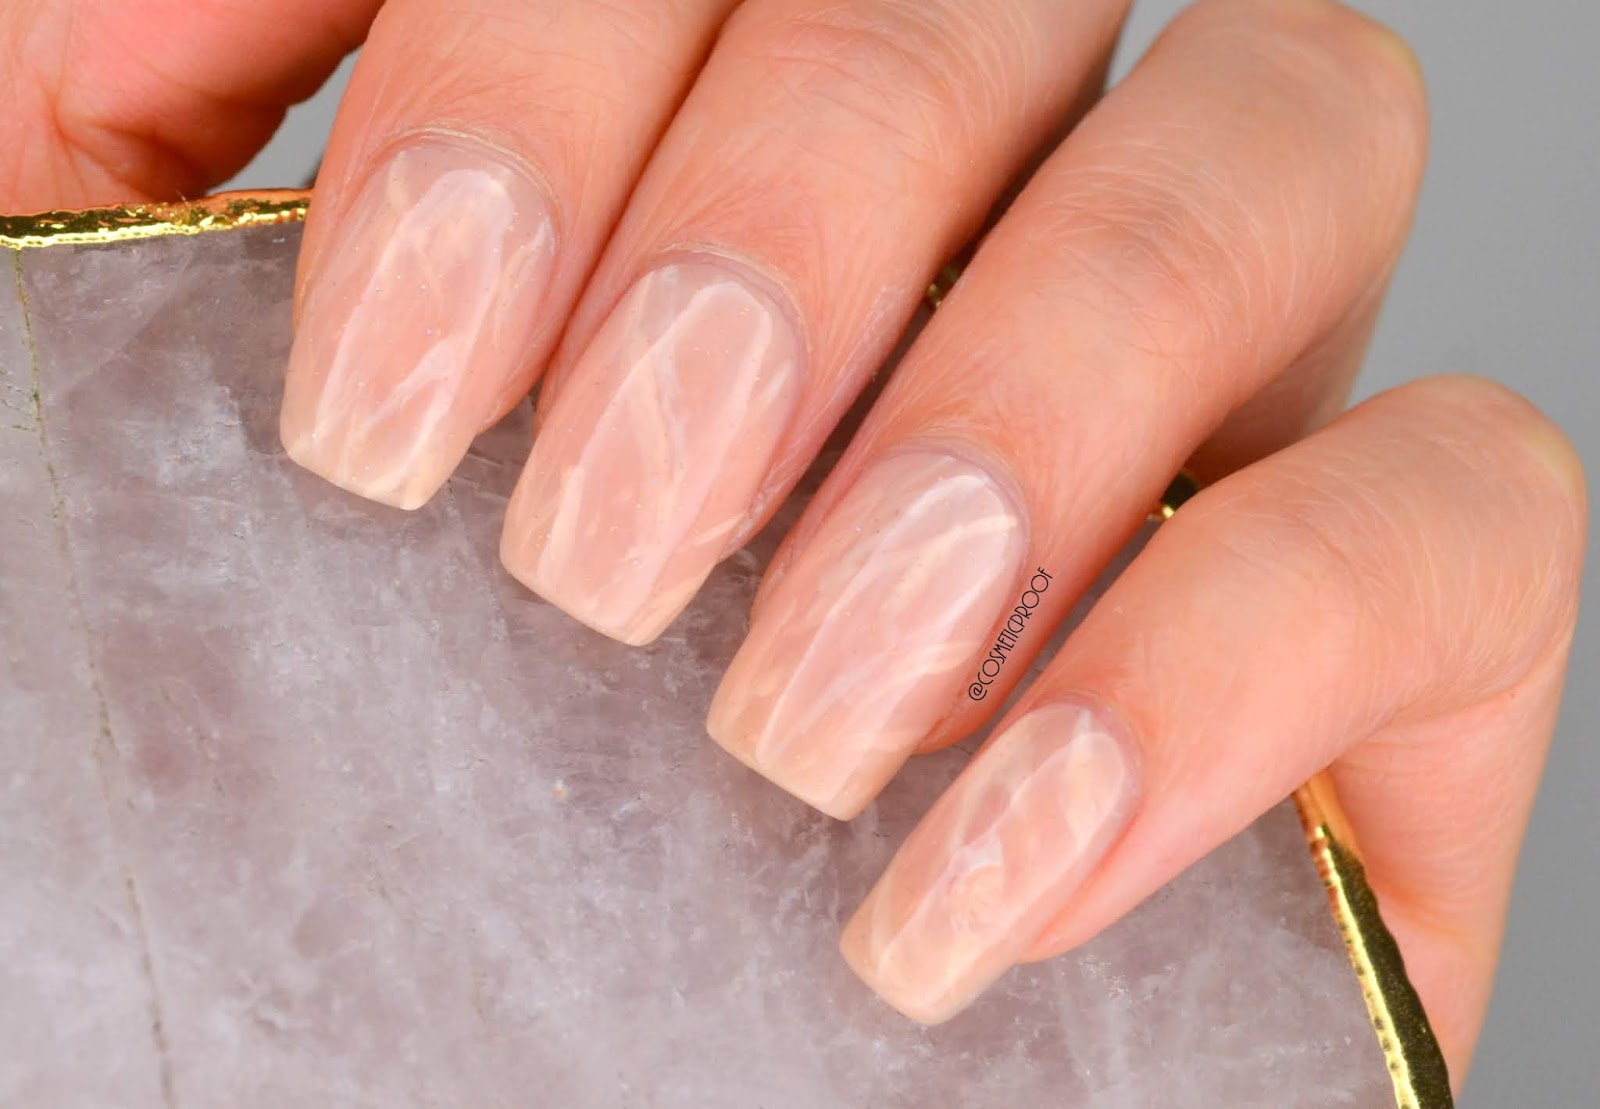 10. Rose quartz nail polish - wide 3